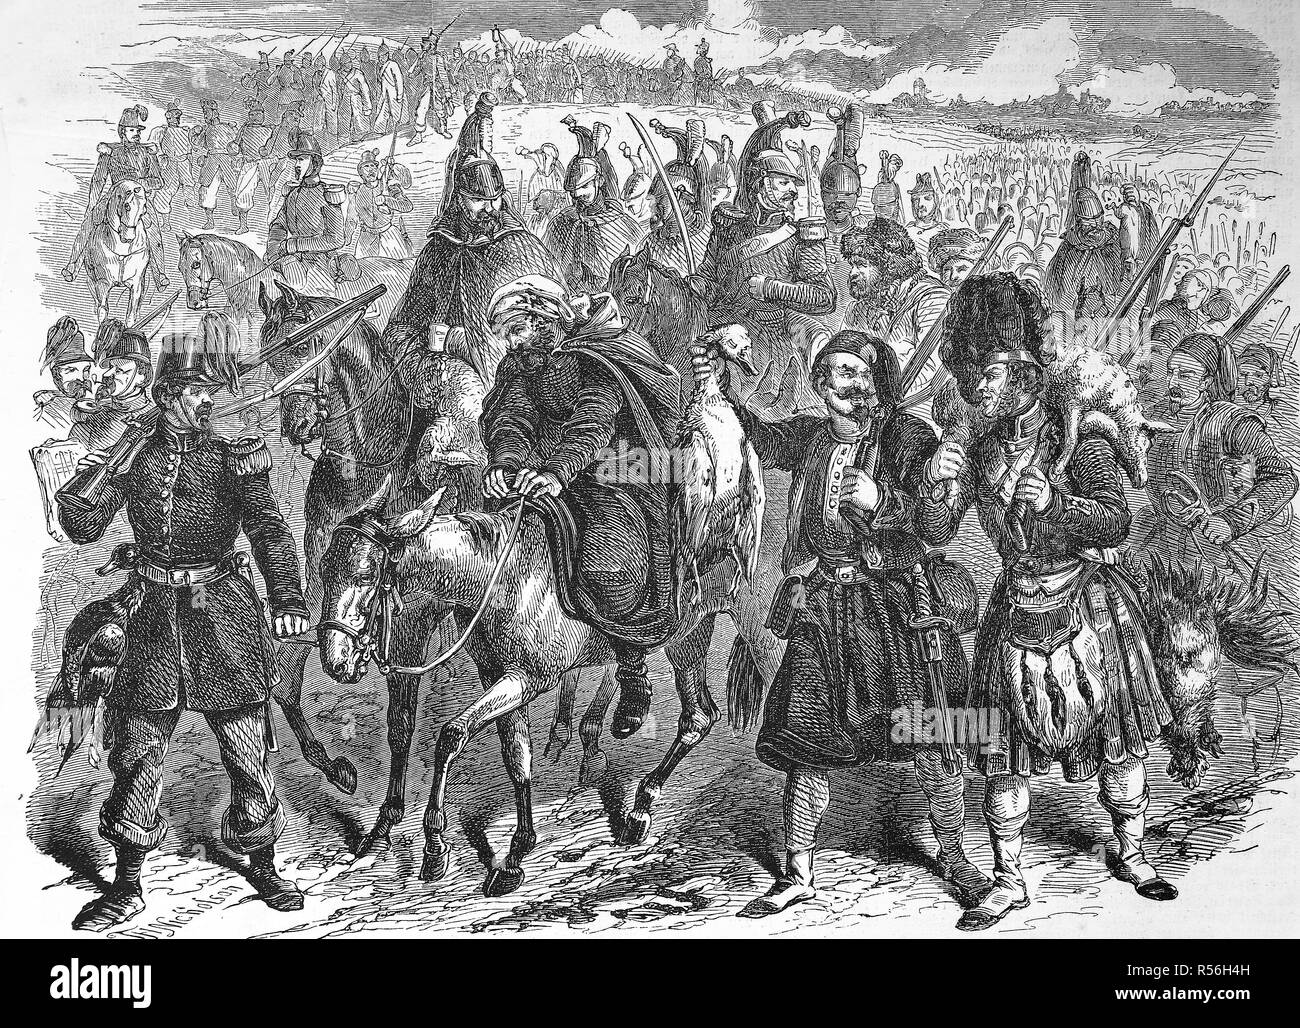 Volver a partir de una exploración y en busca de comida, los soldados ingleses en la guerra de Crimea, 1855, xilografía, Inglaterra Foto de stock